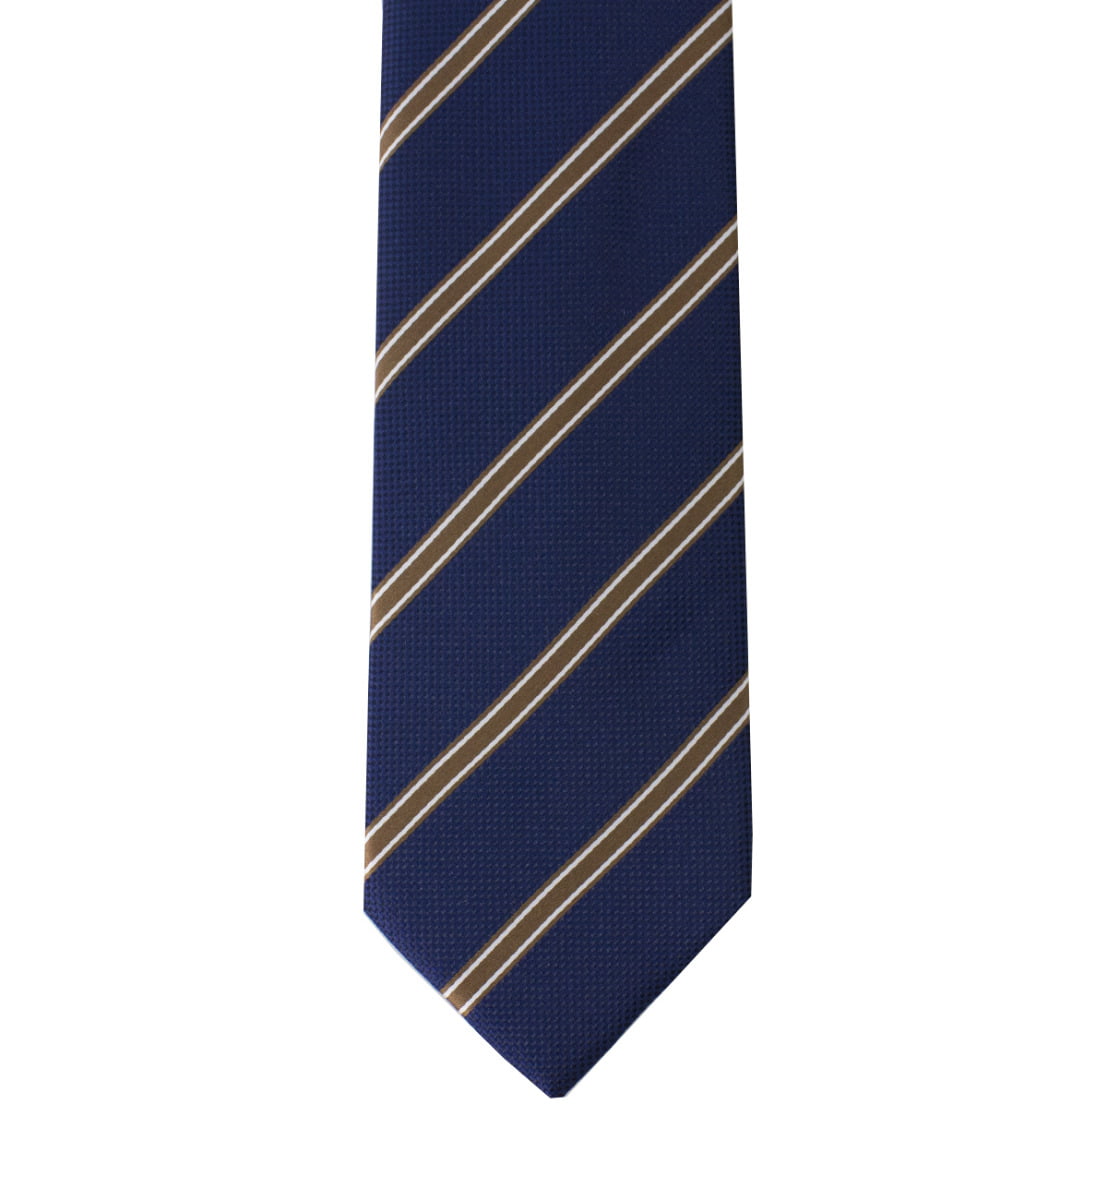 Cravatta uomo blu regimental righe diagonali oro 8cm di larghezza made in italy